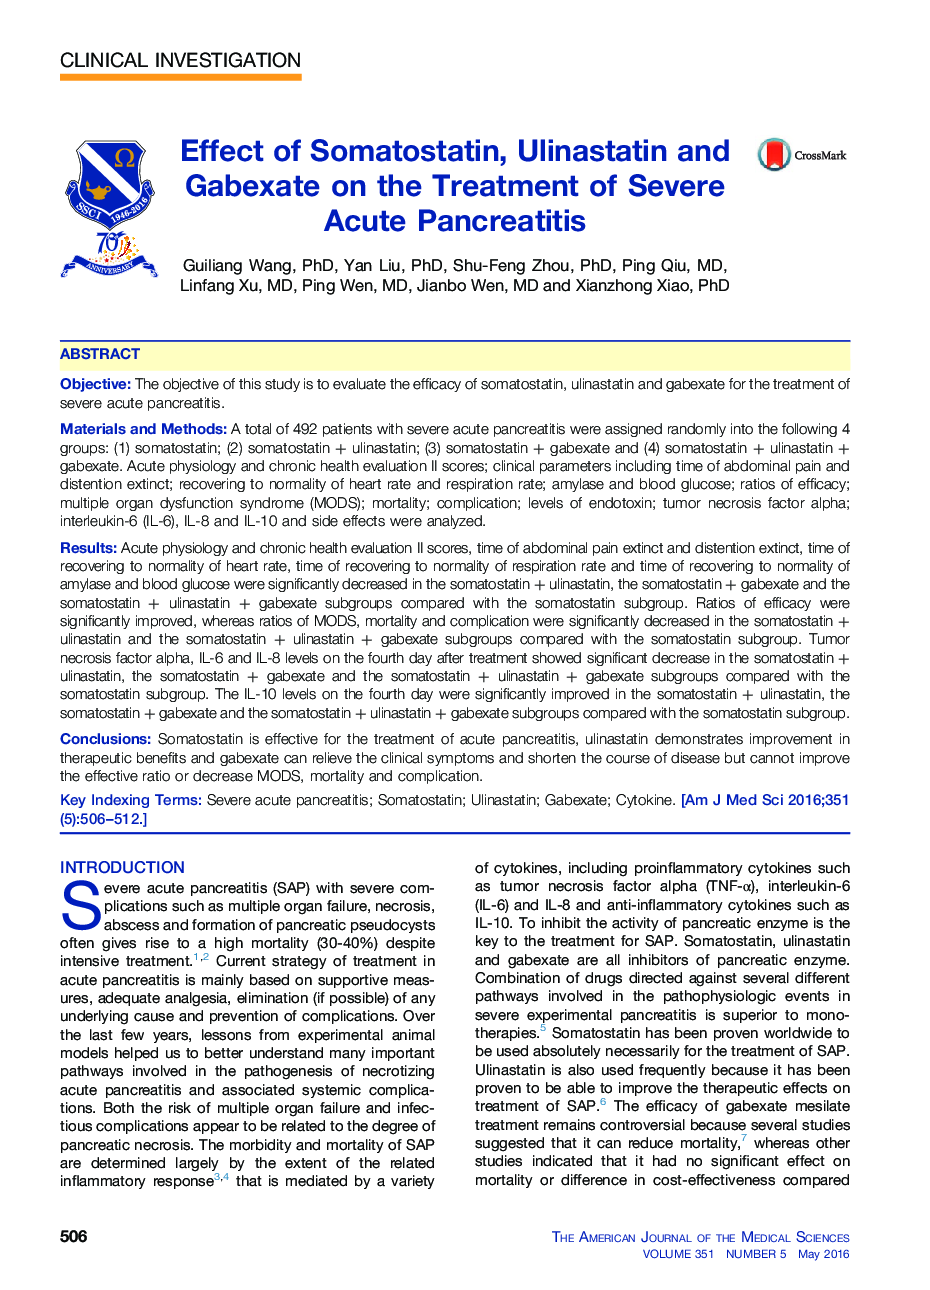 اثر سموتوستاتین، الییناستاتین و گاباکسات بر درمان پانکراتیت حاد شدید 